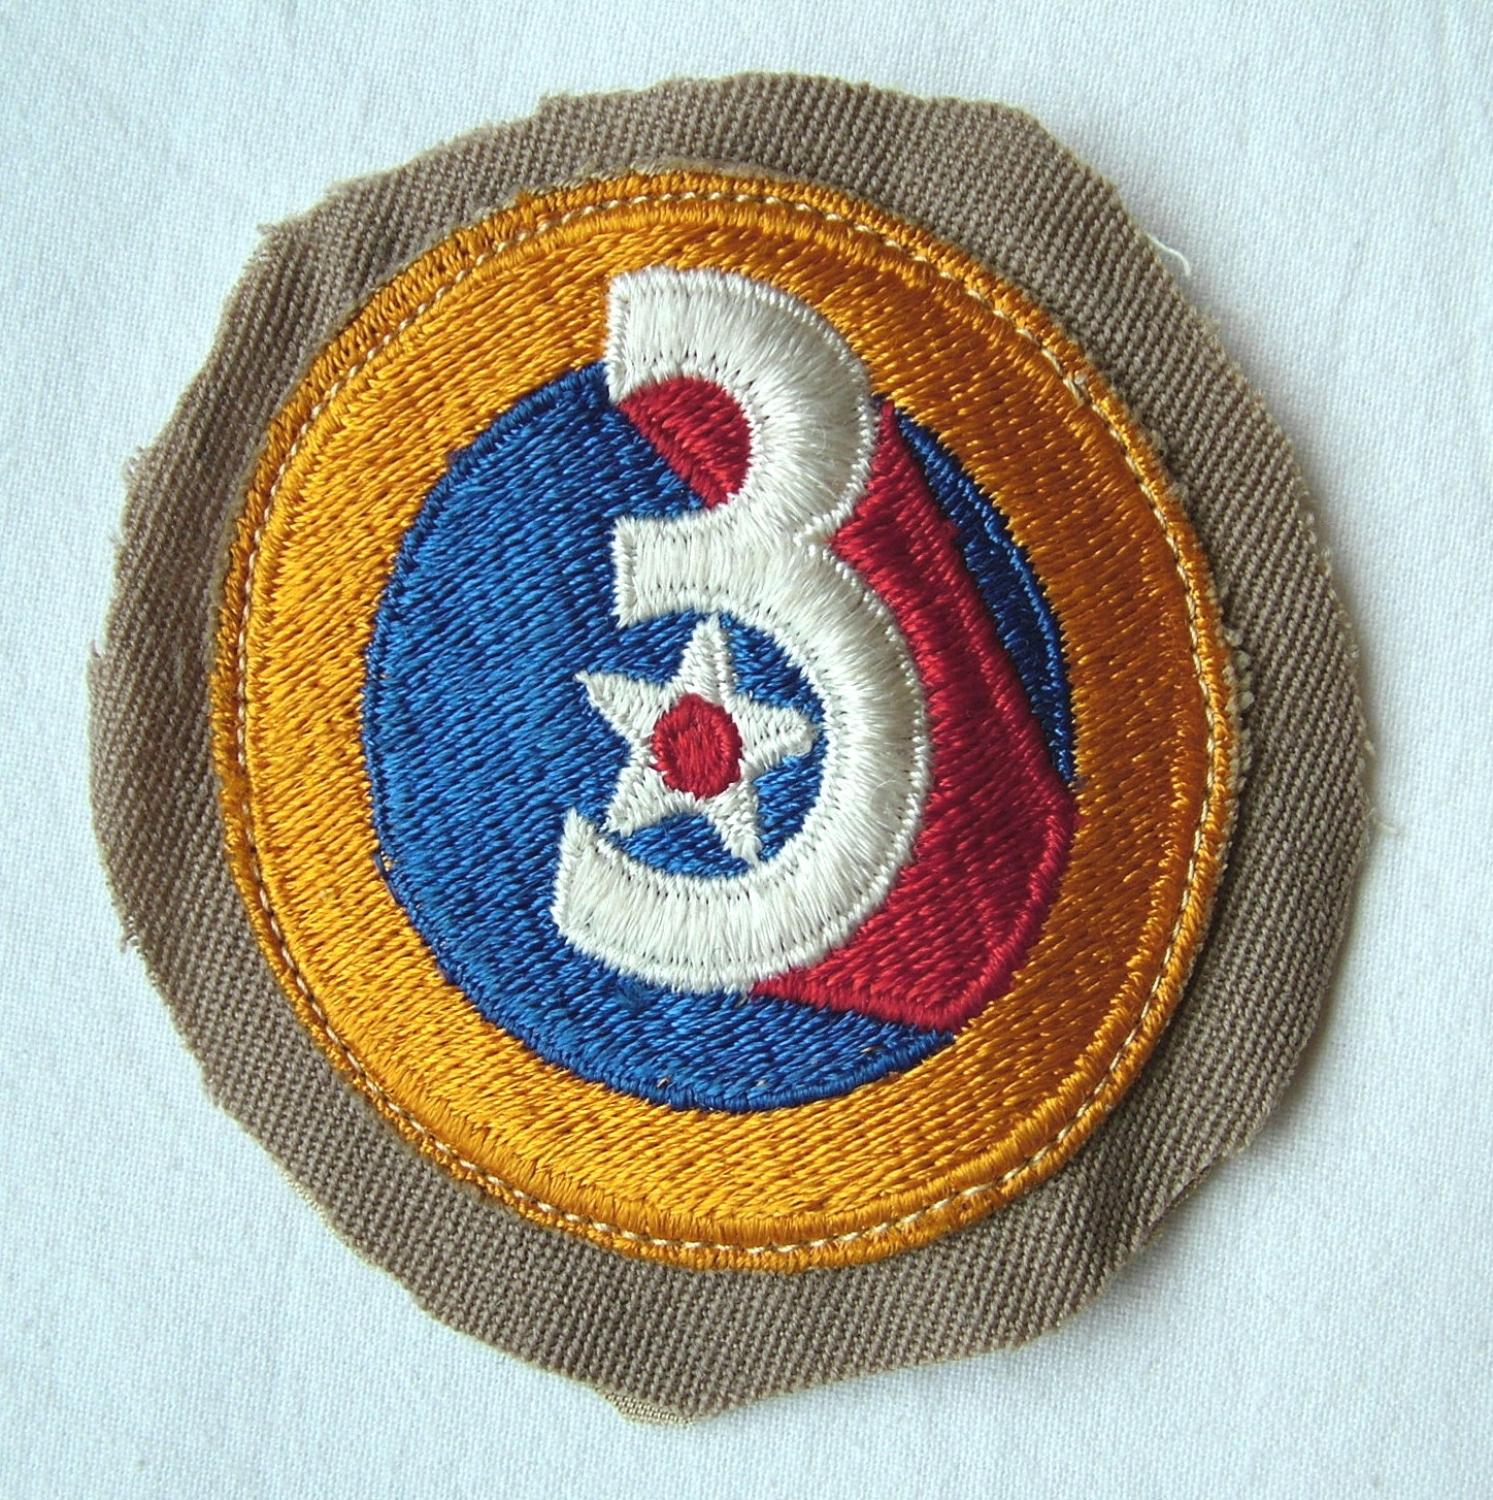 USAAF 3rd AAF Shoulder Patch